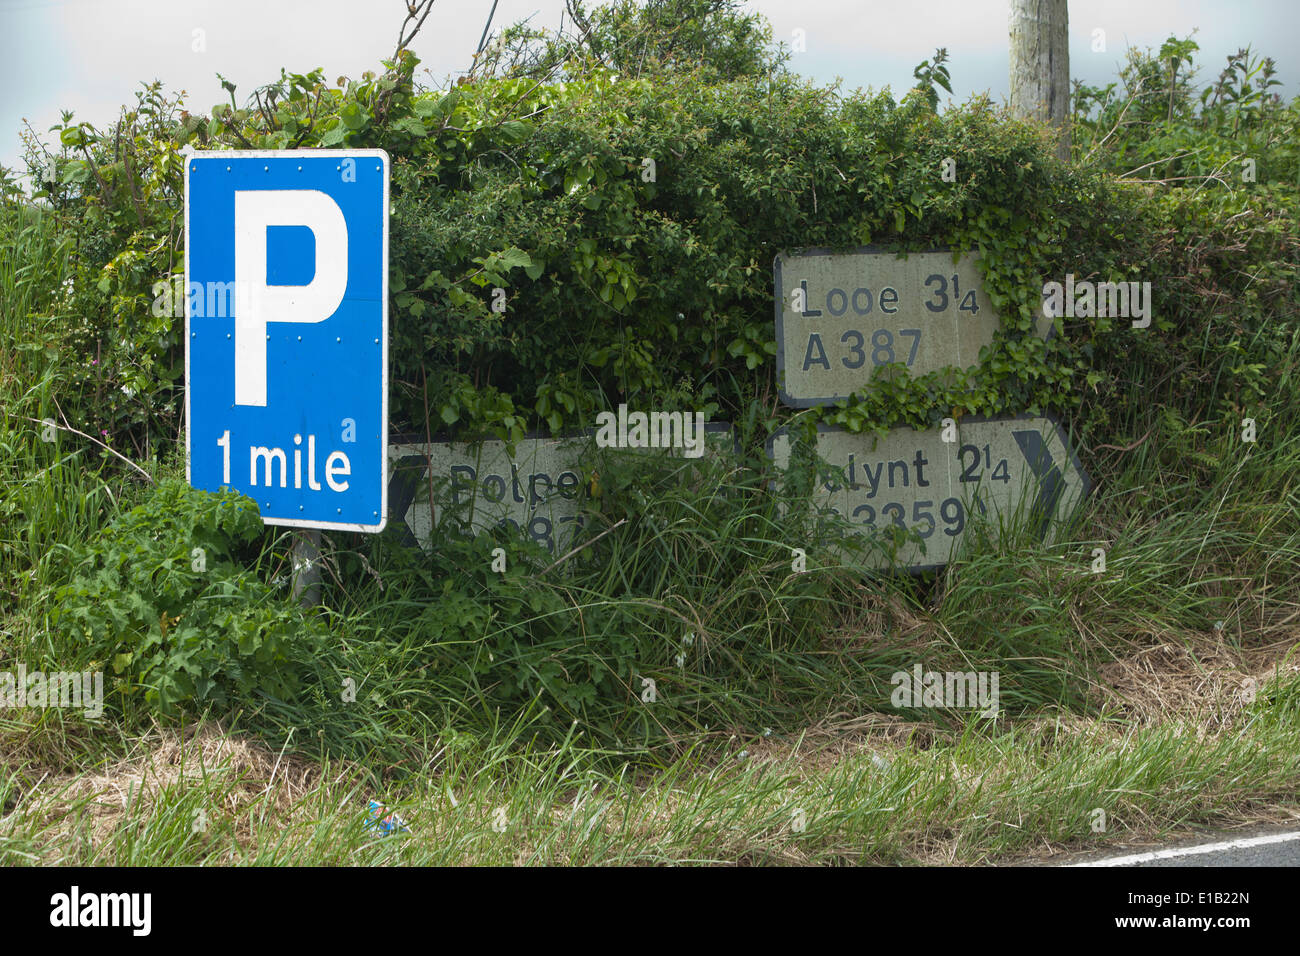 Las señales de la carretera llena de maleza y hierba, al lado de una carretera cerca de looe en Cornwall. Foto de stock